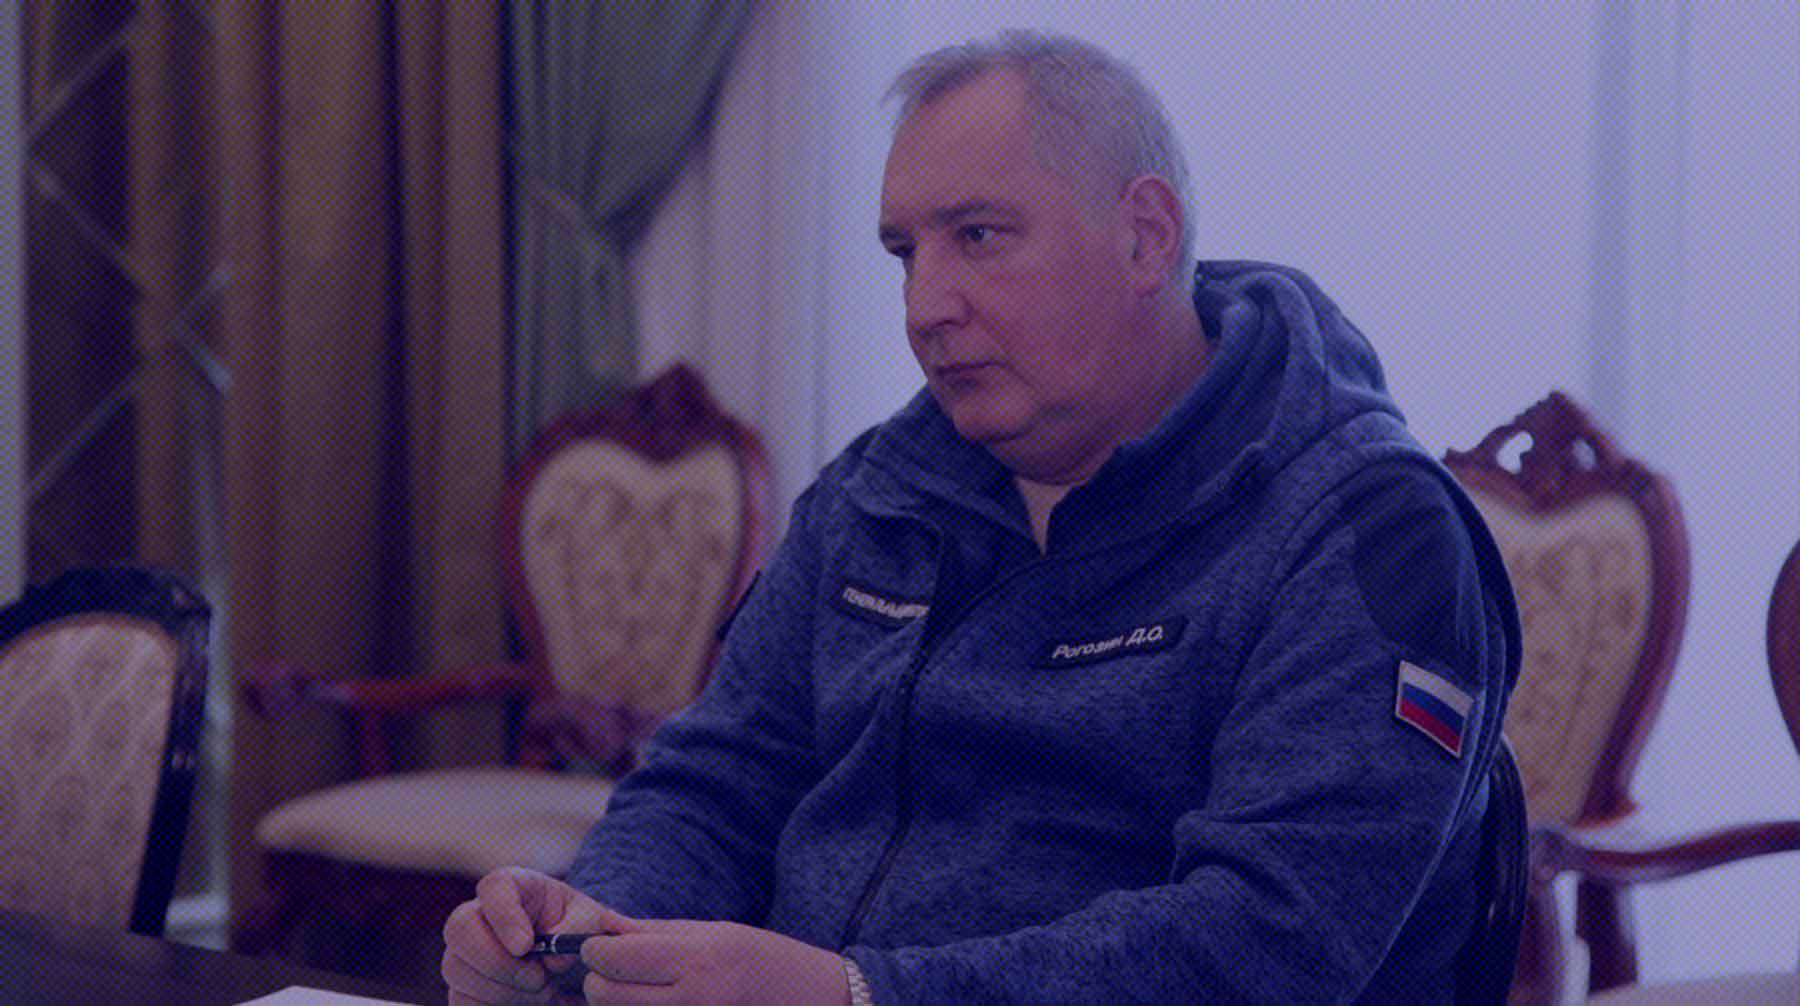 Dailystorm - Борисов вместо Рогозина: Путин совершил перестановки в руководстве «Роскосмоса»